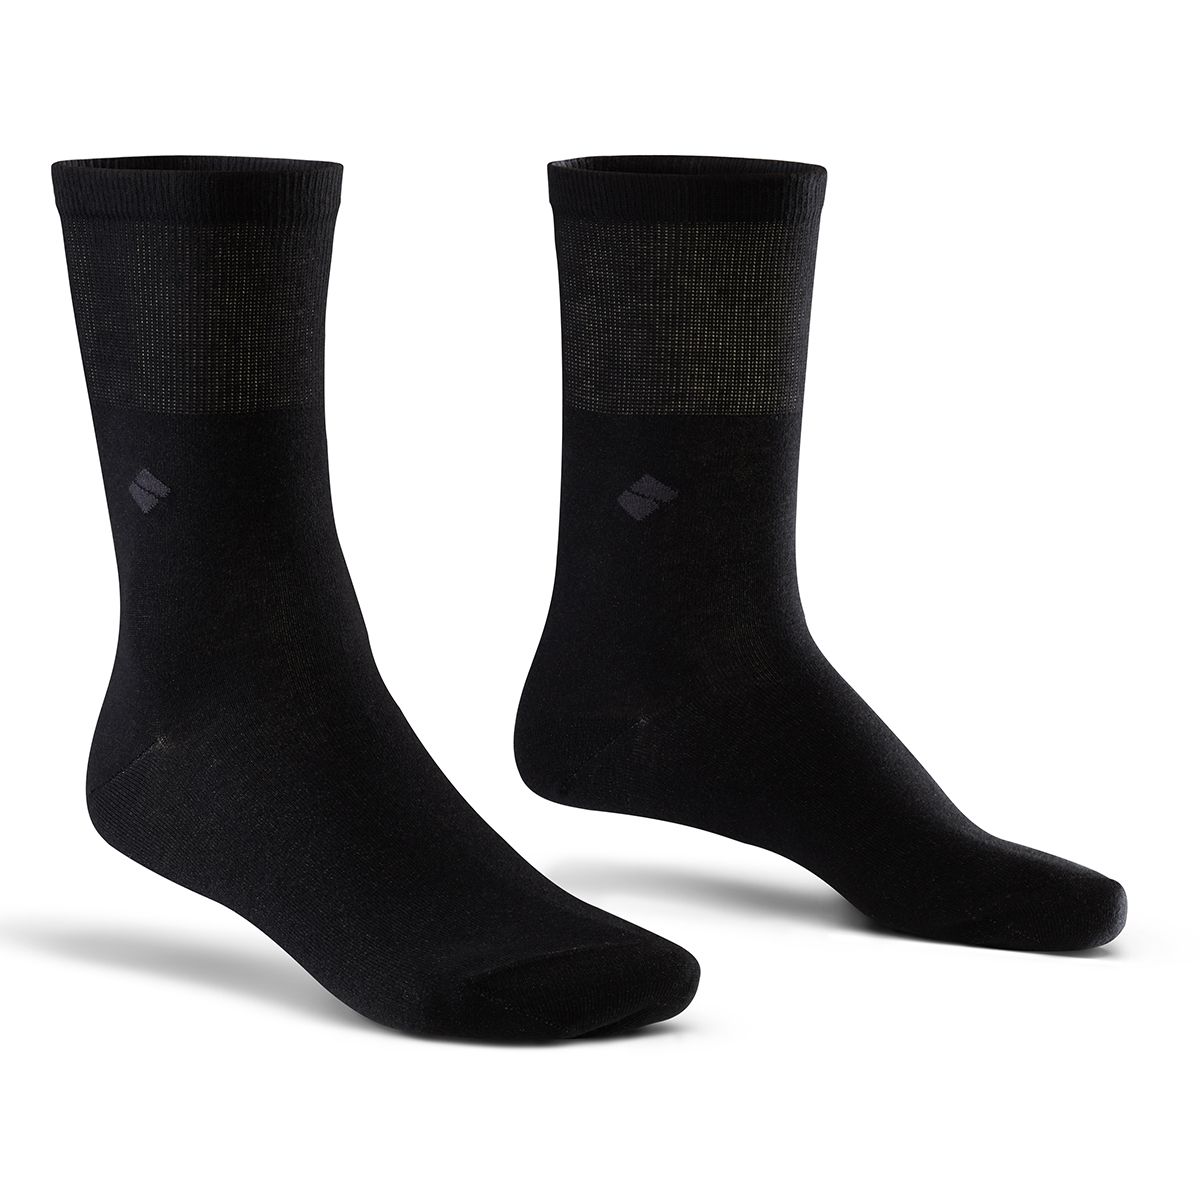 bonnysilver diabetic silver socks in black two socks